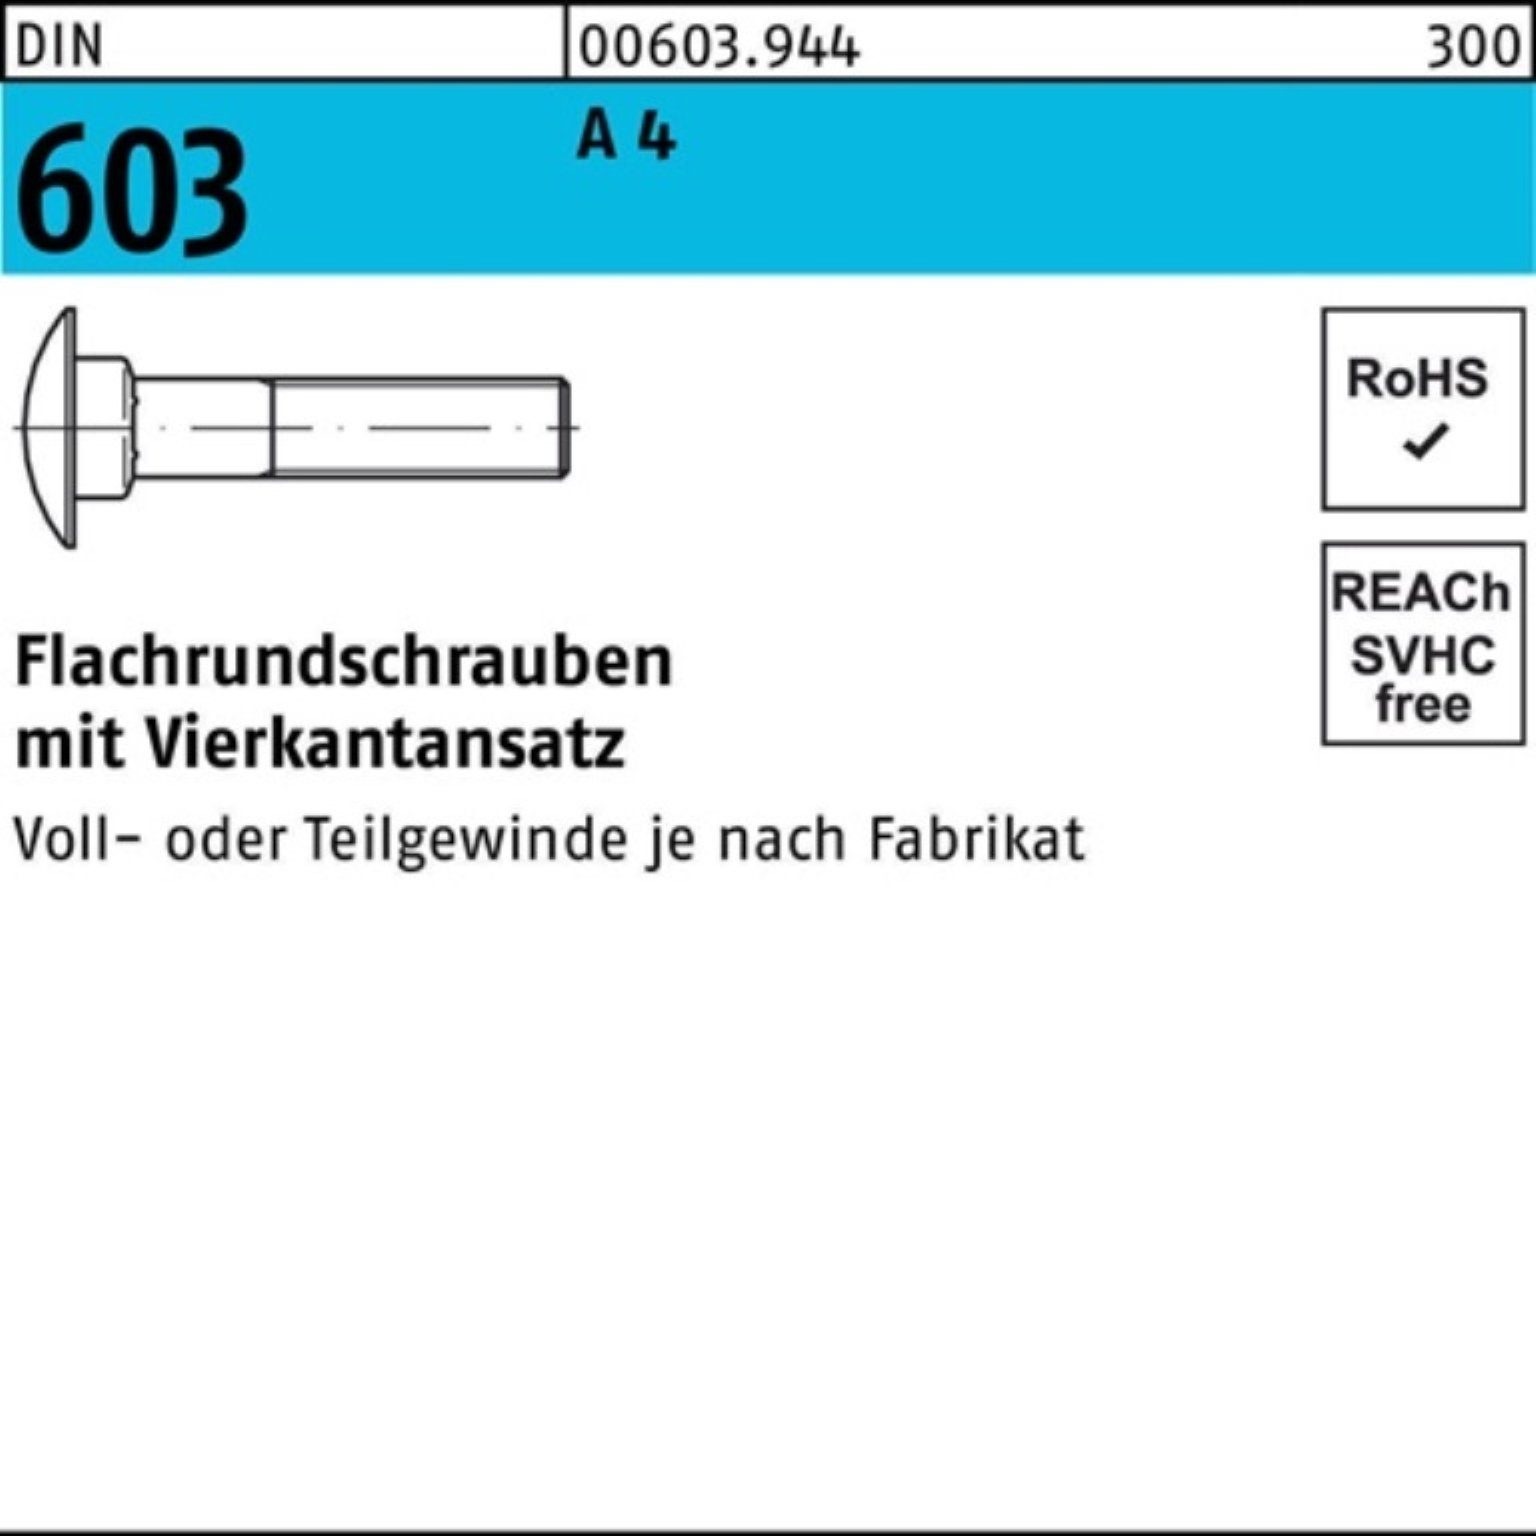 Reyher Schraube 100er Pack Flachrundschraube DIN 603 Vierkantansatz M12x 60 A 4 1 Stü